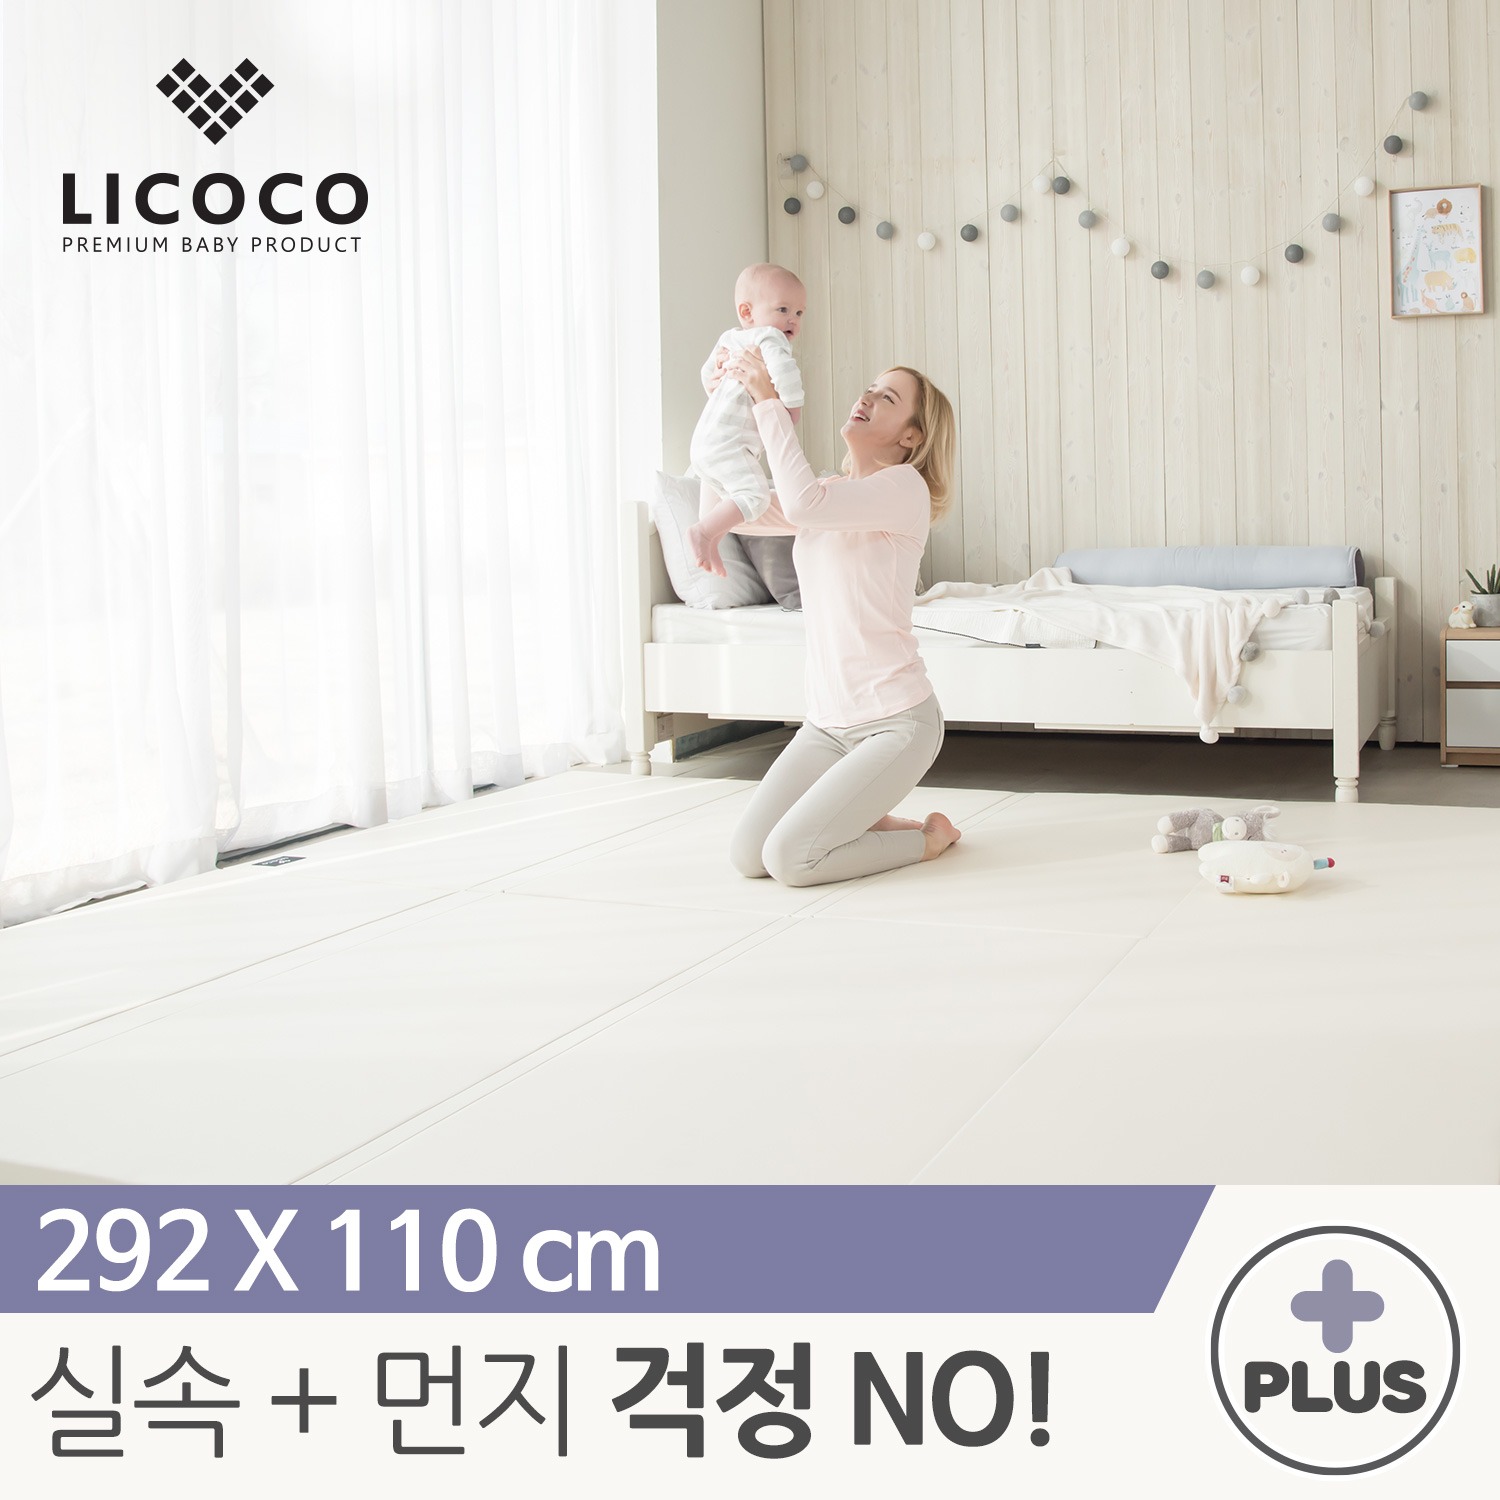 [리코코] NEW 클린롤매트 Plus 292x110cm 아이보리 / 거실 복도 놀이방 층간소음 아기 매트